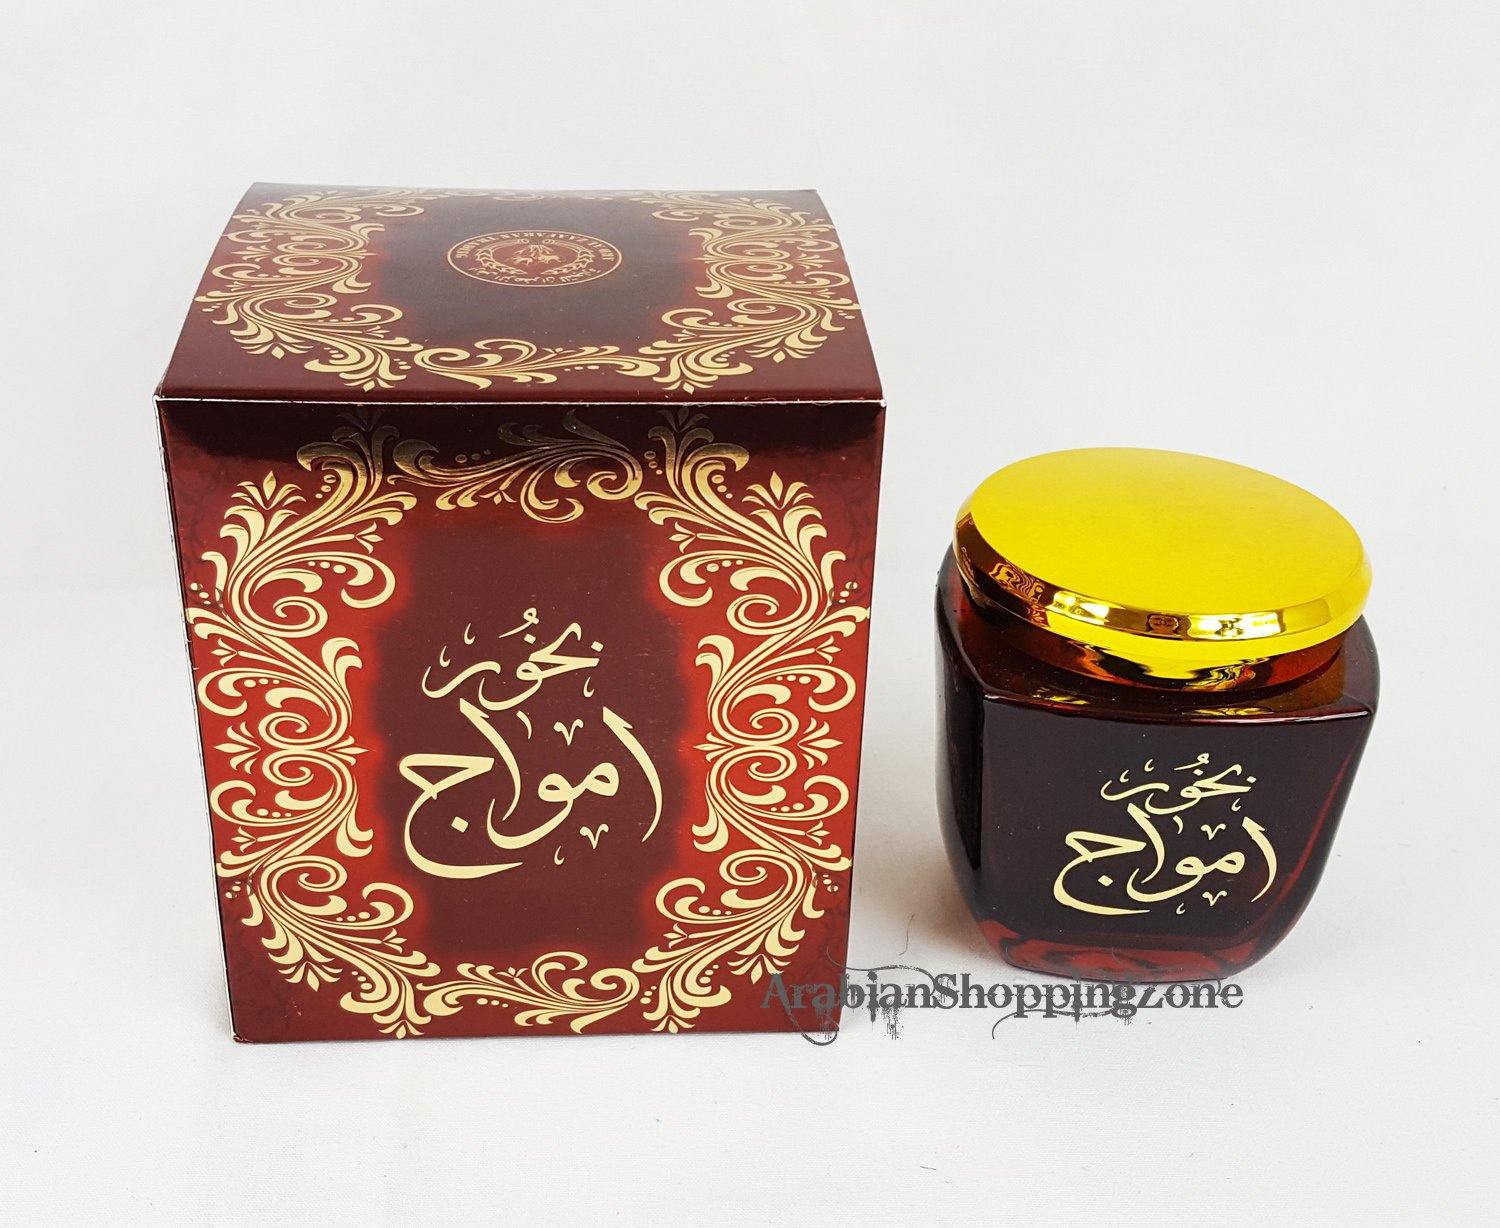 ARD ALZAAFARAN Incense Bakhoor Collection 80g - Arabian Shopping Zone